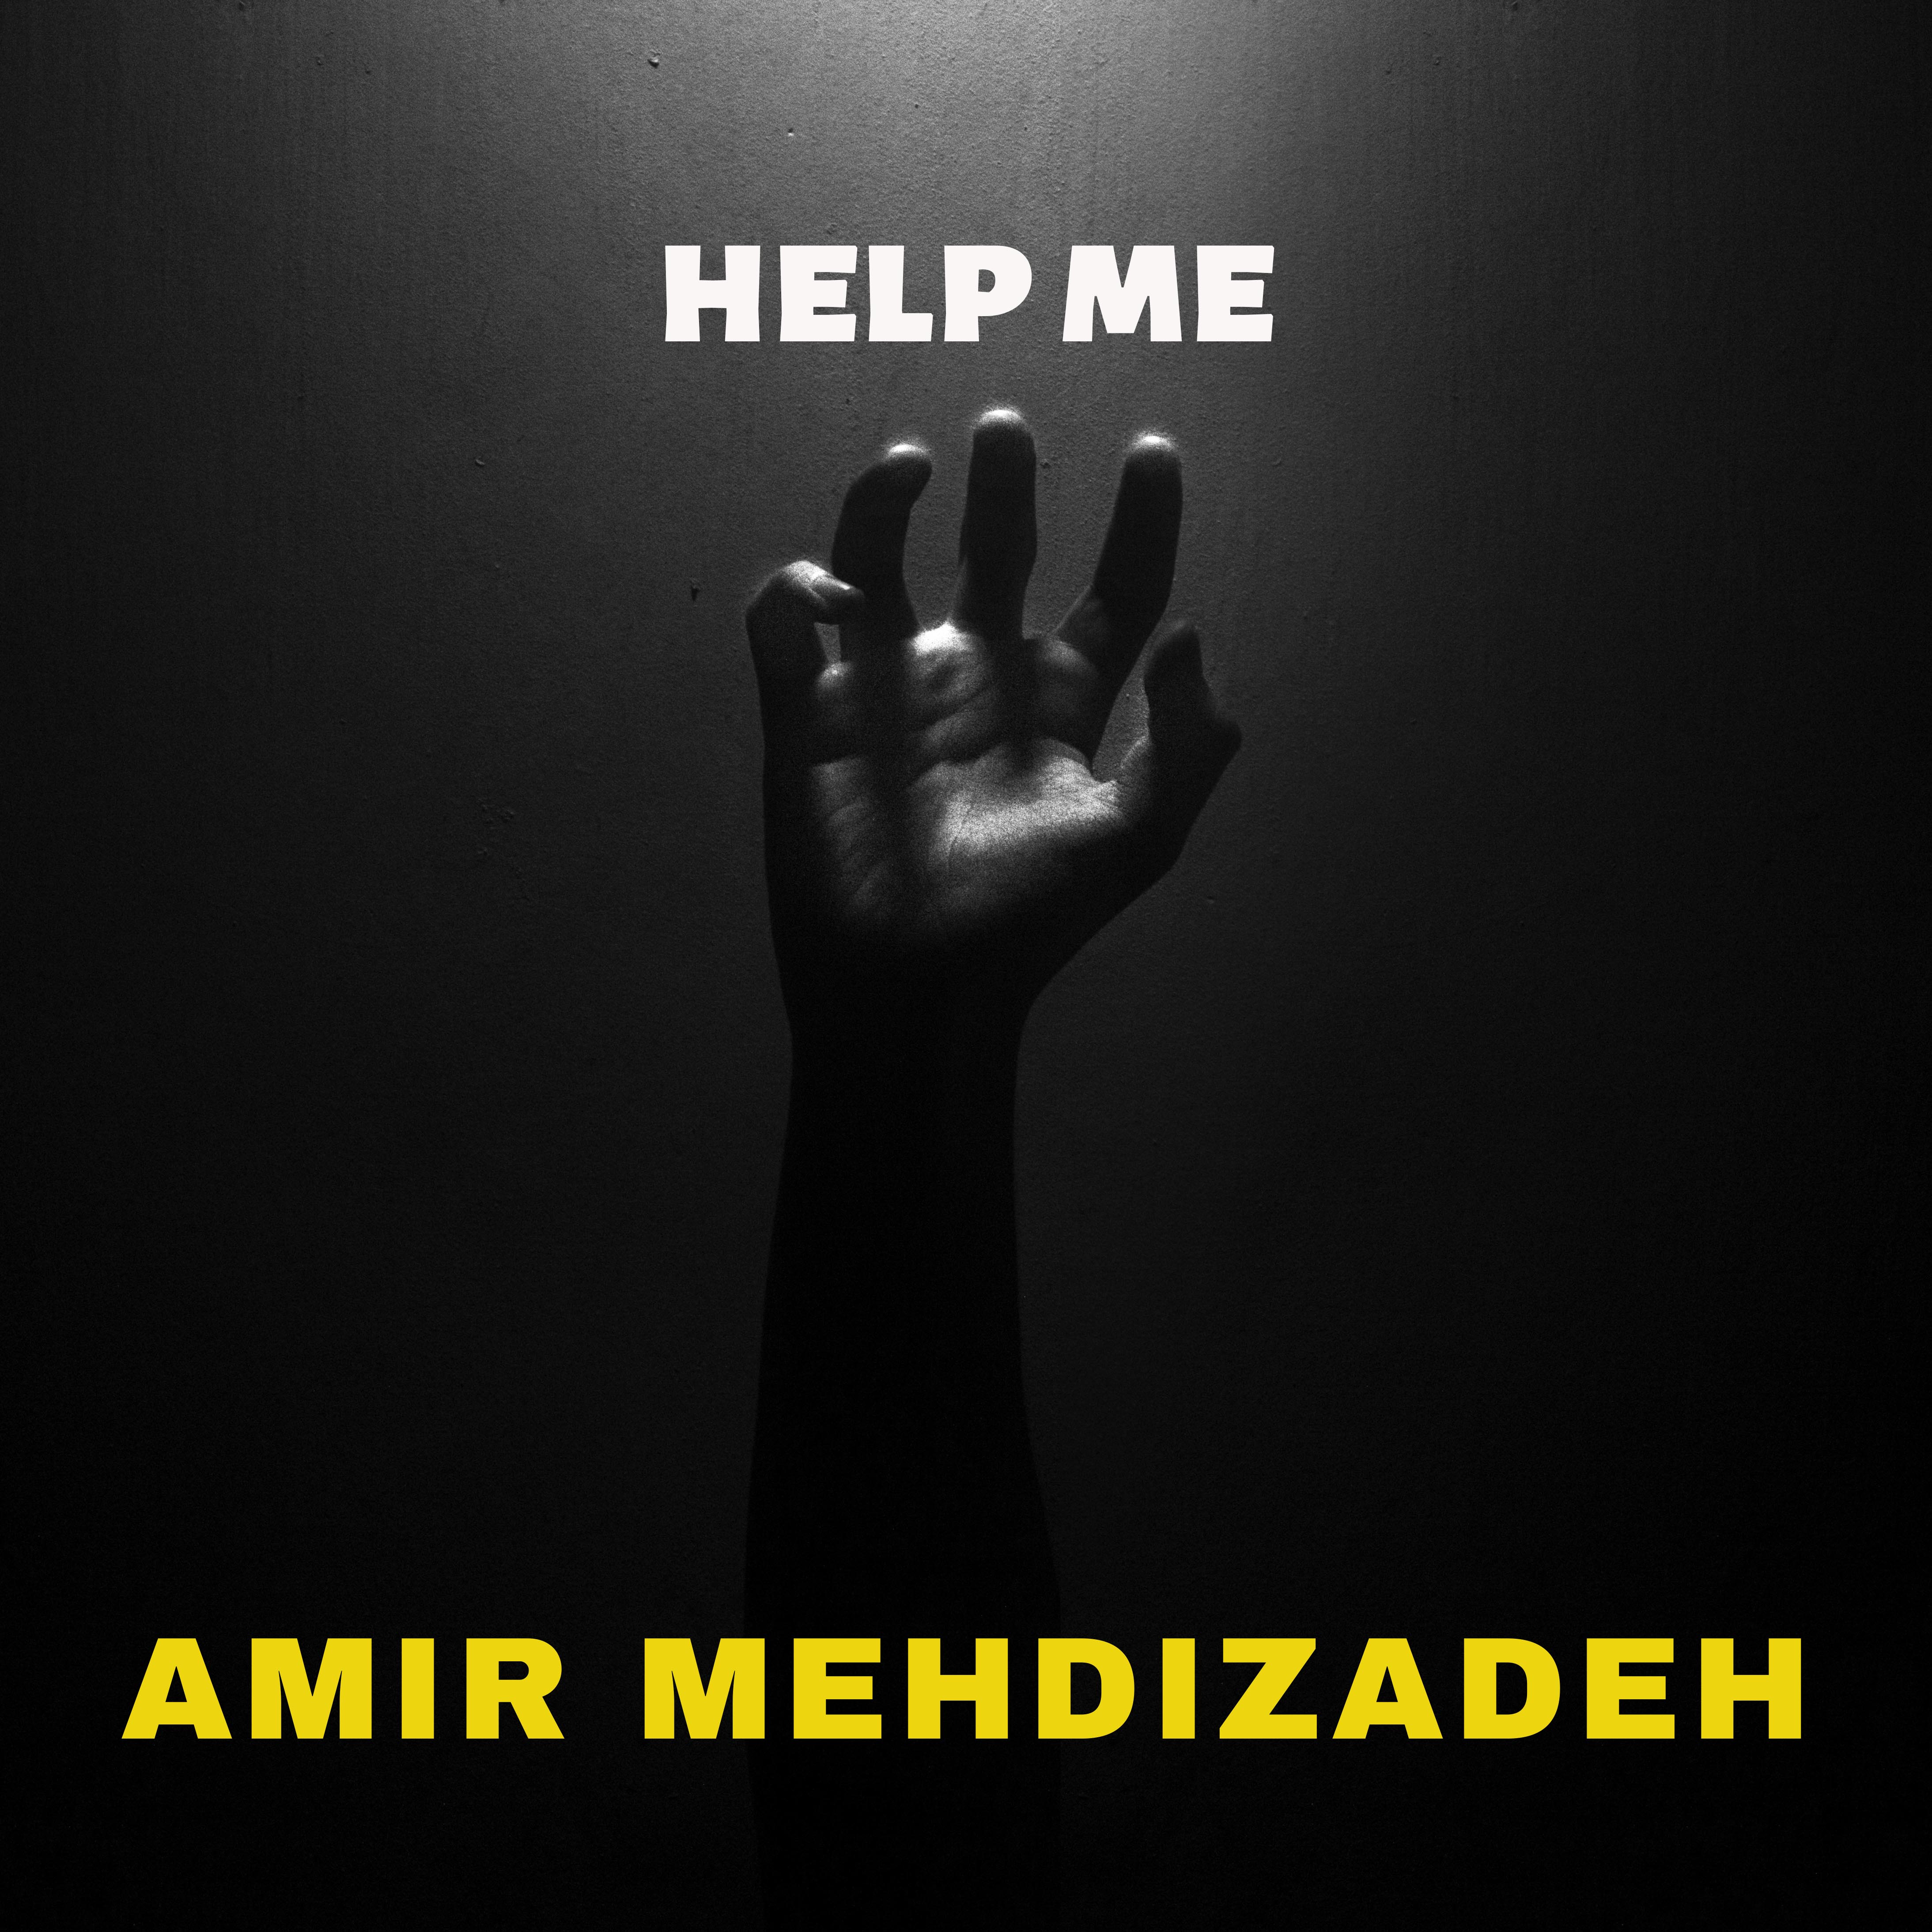 Amir Mehdizadeh